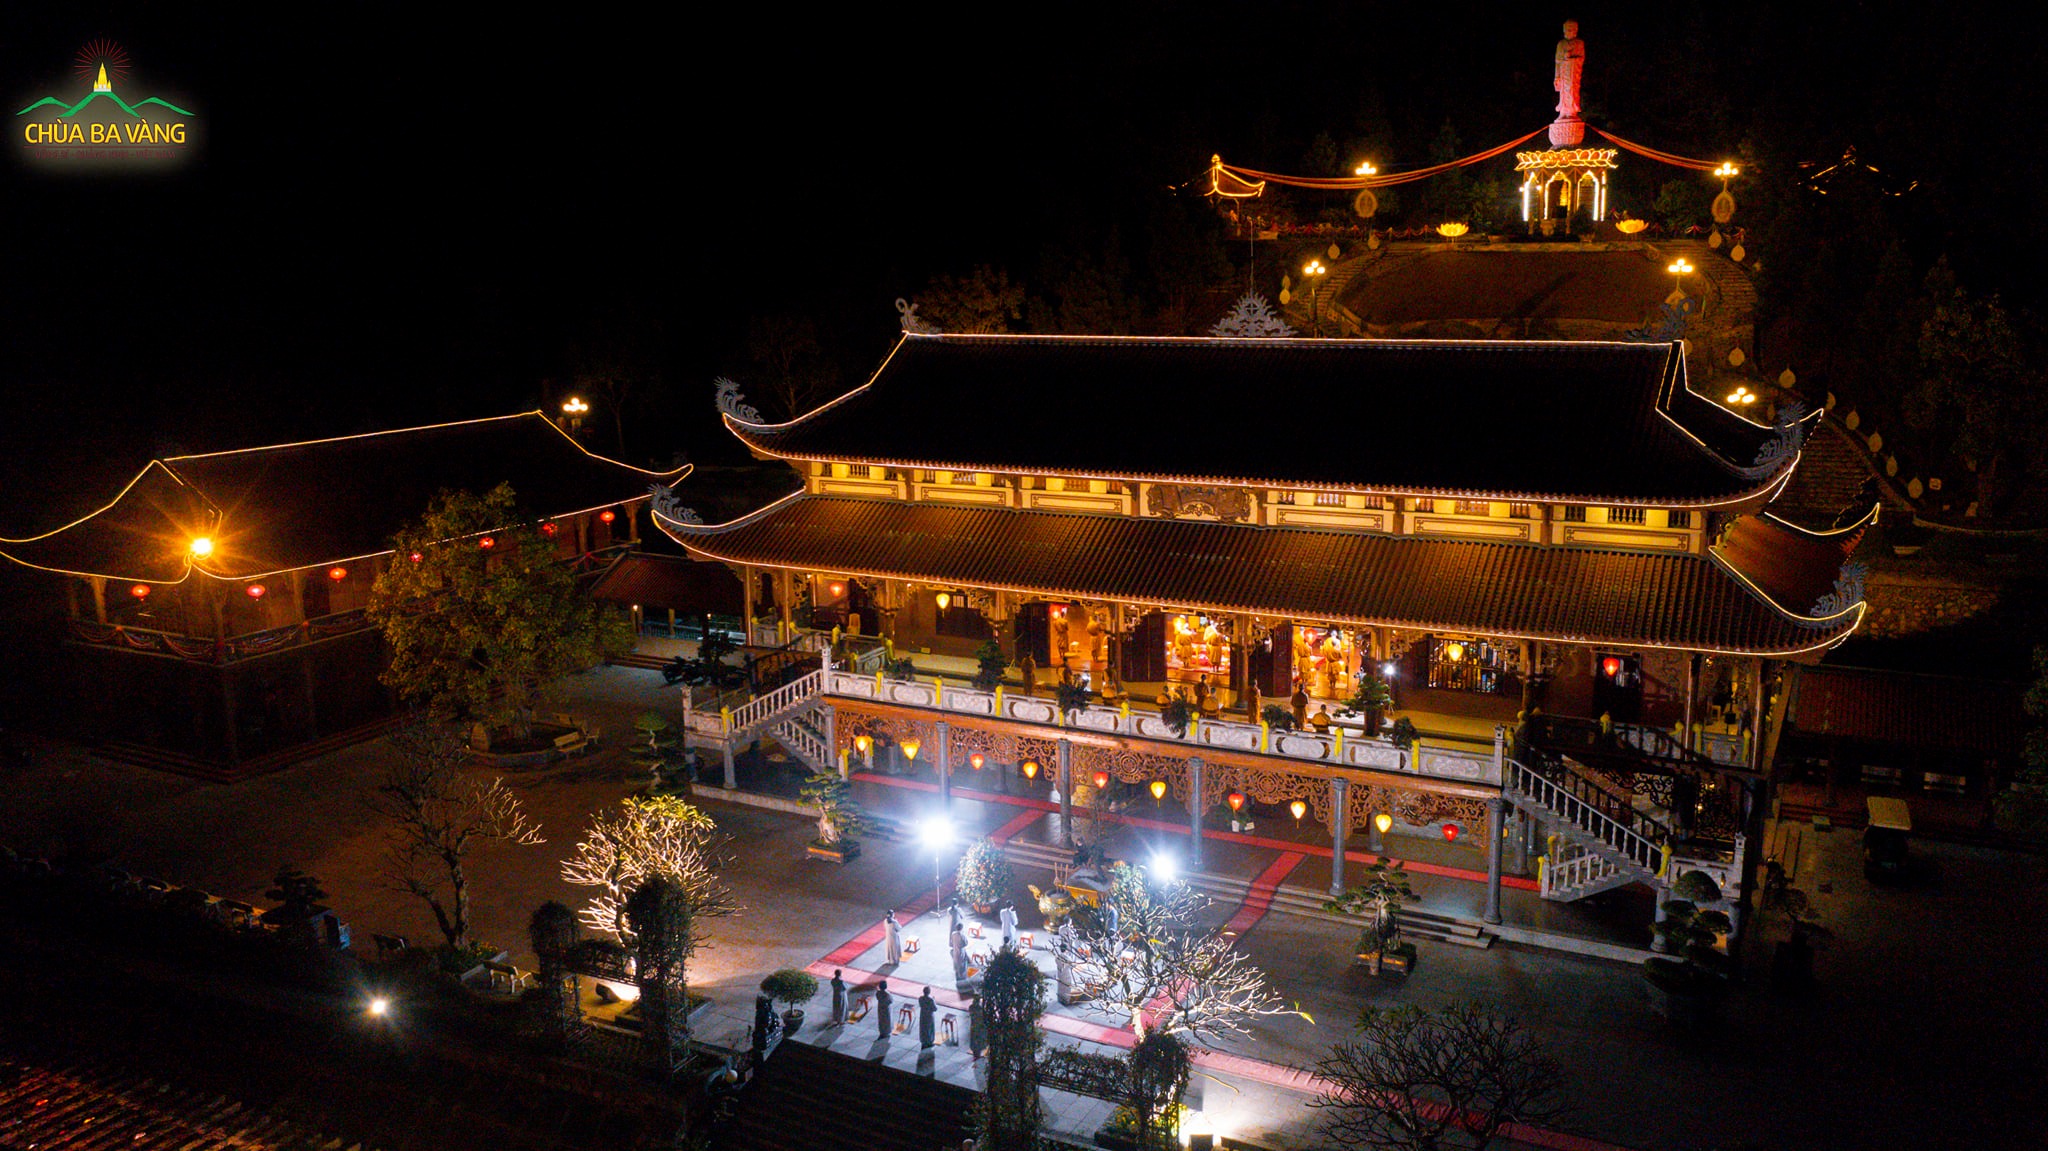 Trong không khí trang nghiêm và lắng đọng, chùa Ba Vàng tổ chức chương trình tưởng niệm Hoà thượng Thiền sư Thích Nhất Hạnh tại tổ đường chùa Ba Vàng